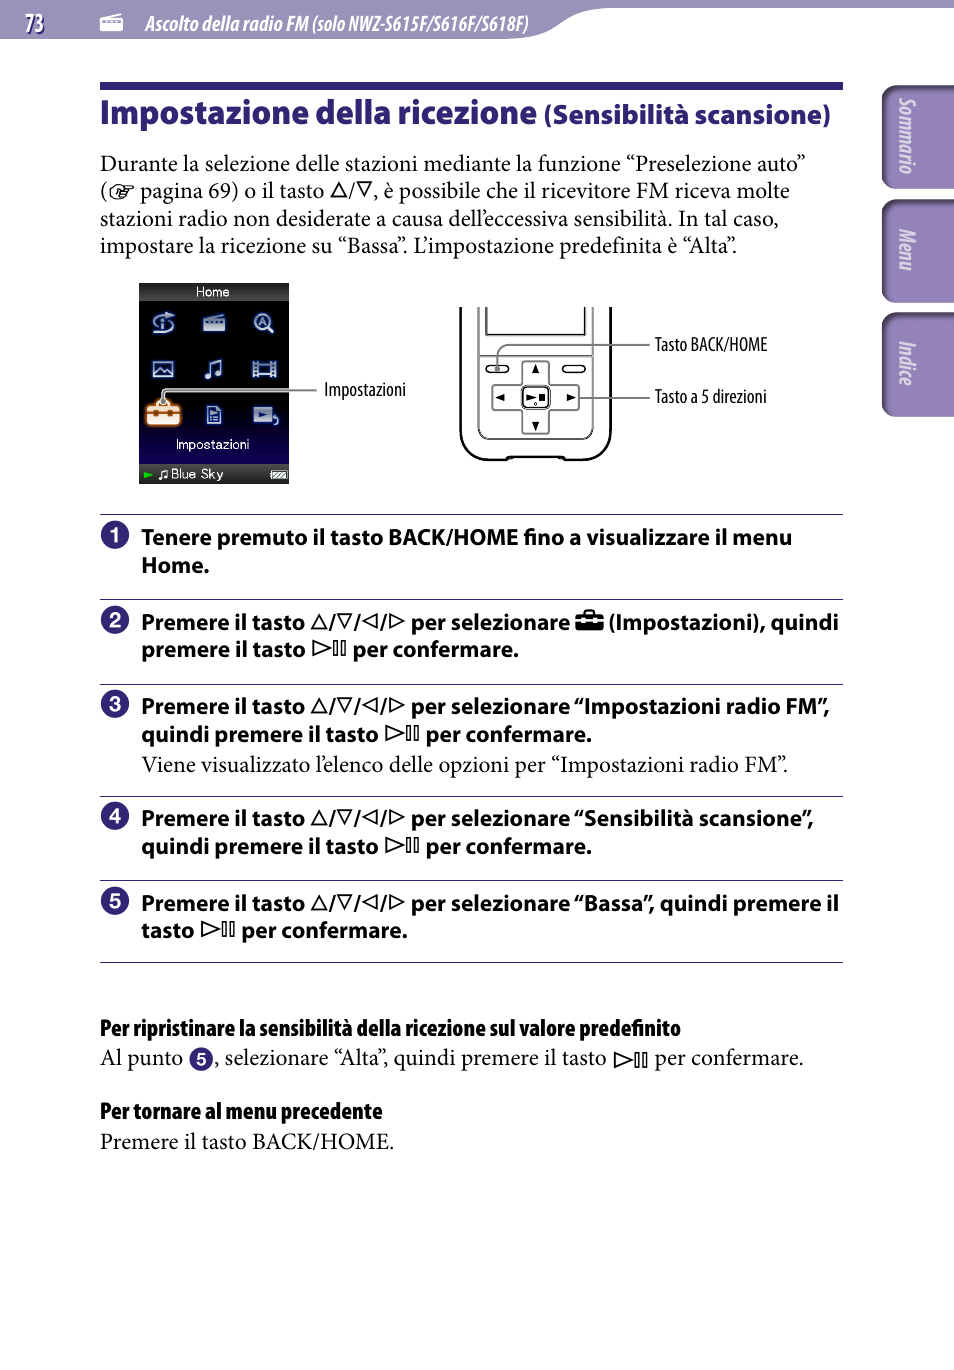 Impostazione della ricezione, Sensibilità scansione), Sensibilità scansione | Sony NWZ-S515 Manuale d'uso | Pagina 73 / 133